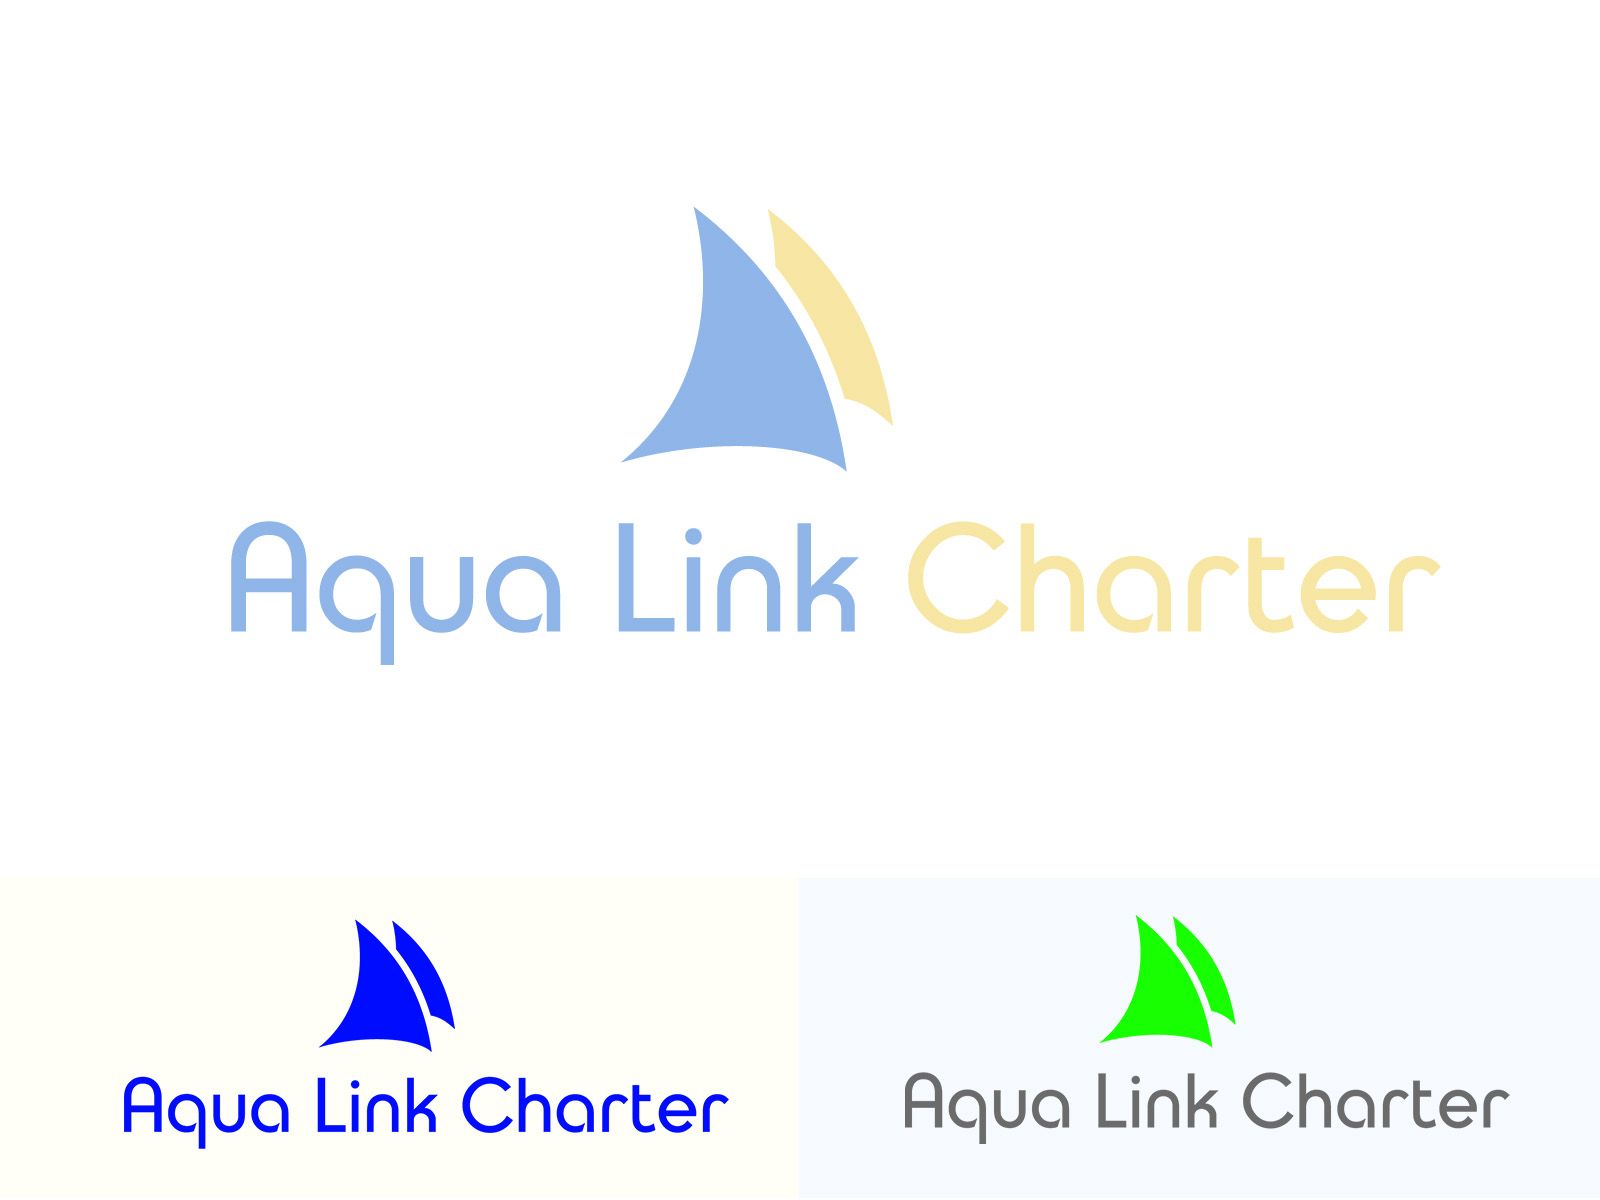 Аренда (чартер) парусных яхт - Aqua Link Charter - дизайнер eestingnef